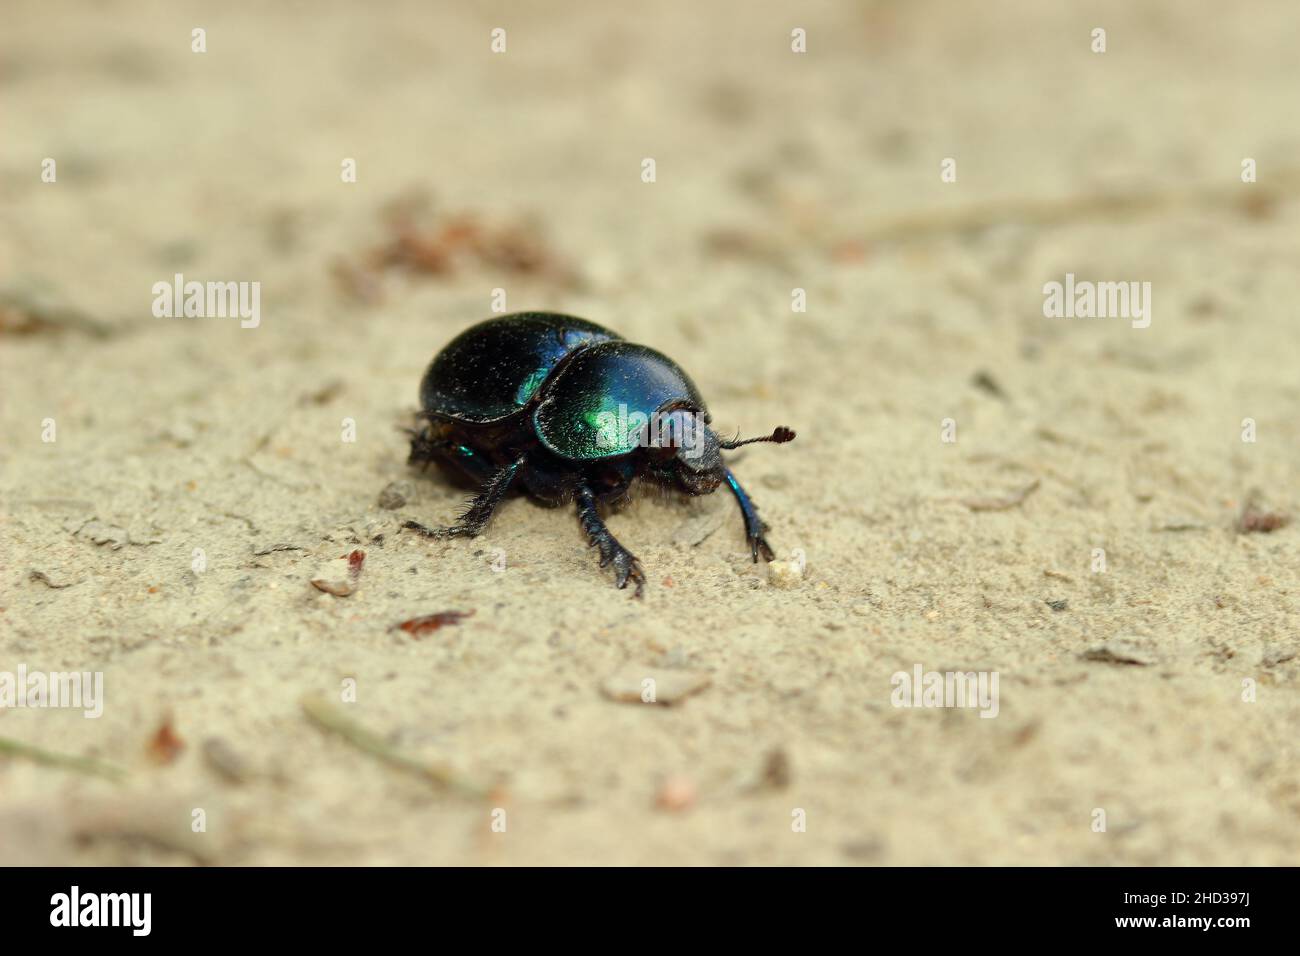 Primer plano de un insecto del escarabajo del dor en la arena Foto de stock